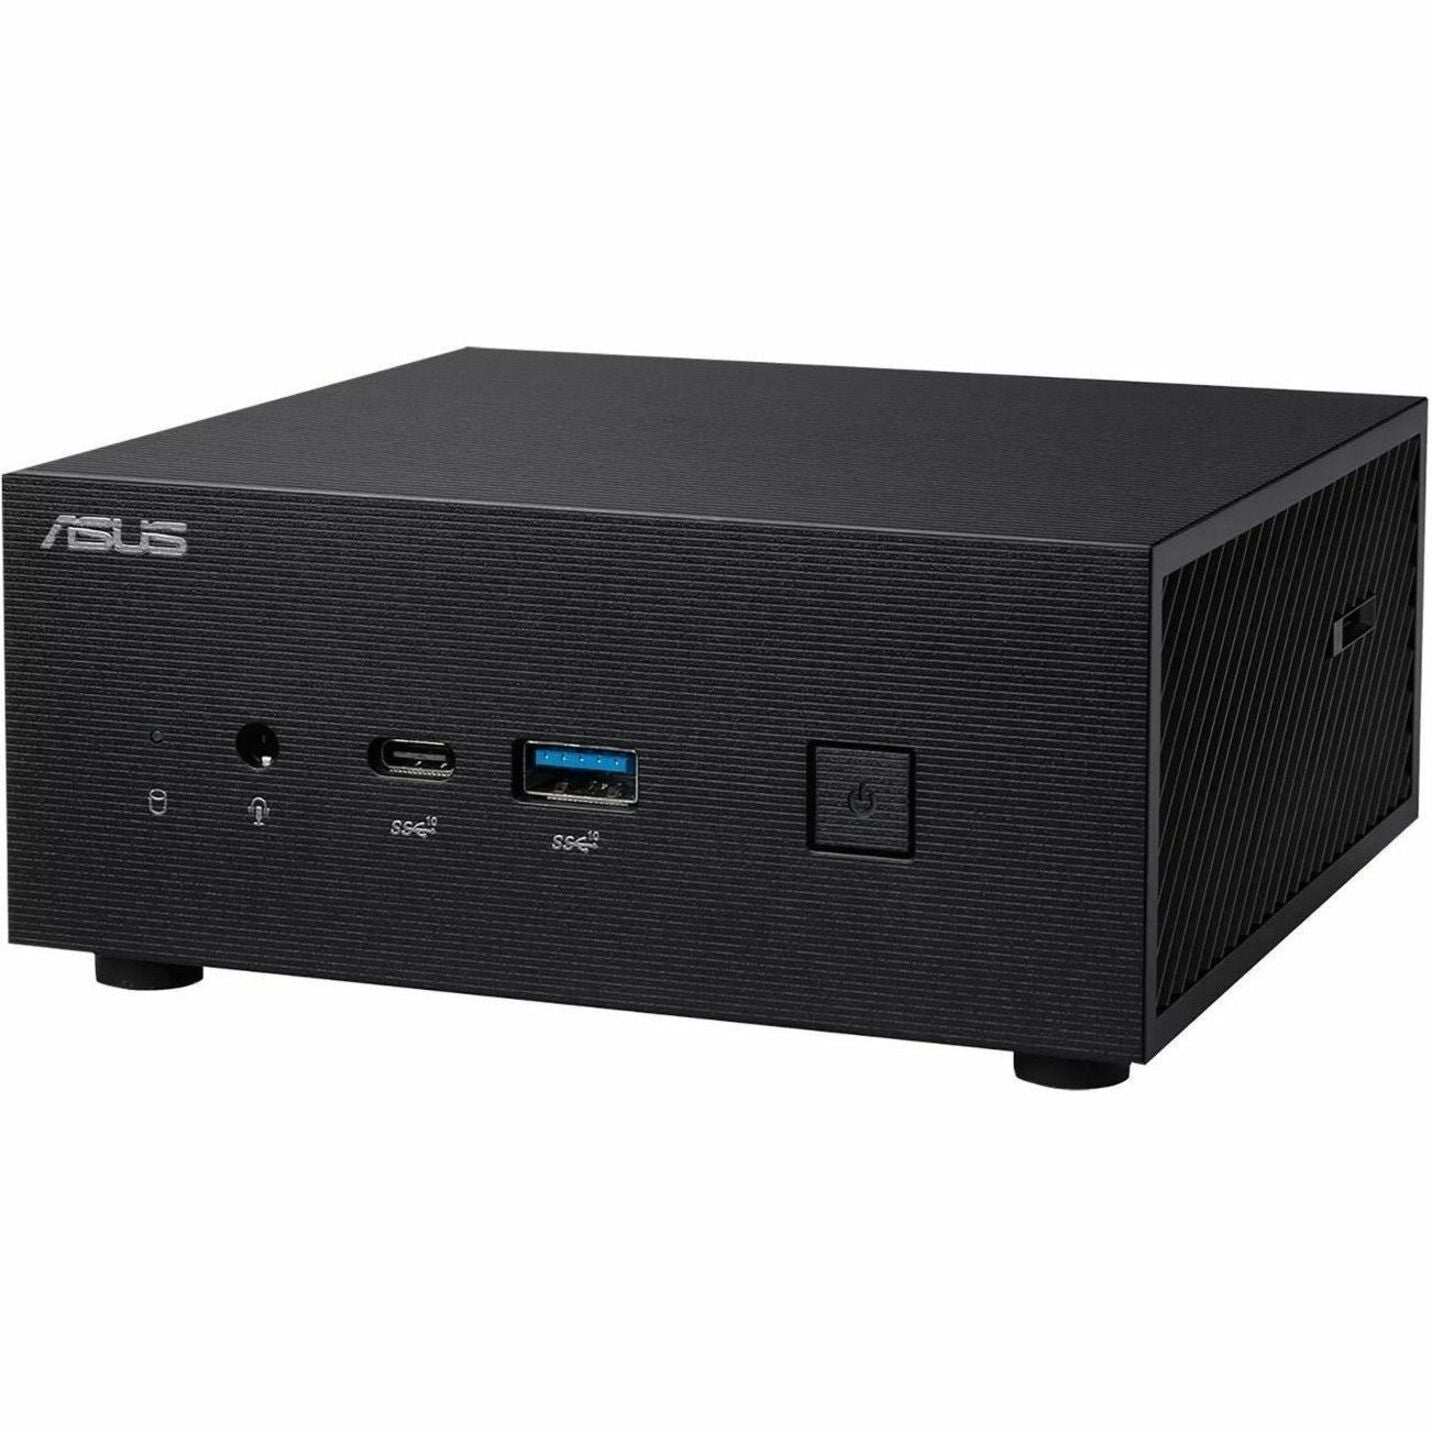 ASUS PN63-S1-BB5G000X1TD-NL Mini PC Barebone, Intel Core i5-1135G7, up to 64GB DDR4 RAM, 2 M.2 SSD + 1 2.5-inch HDD, WiFi 6E, Bluetooth